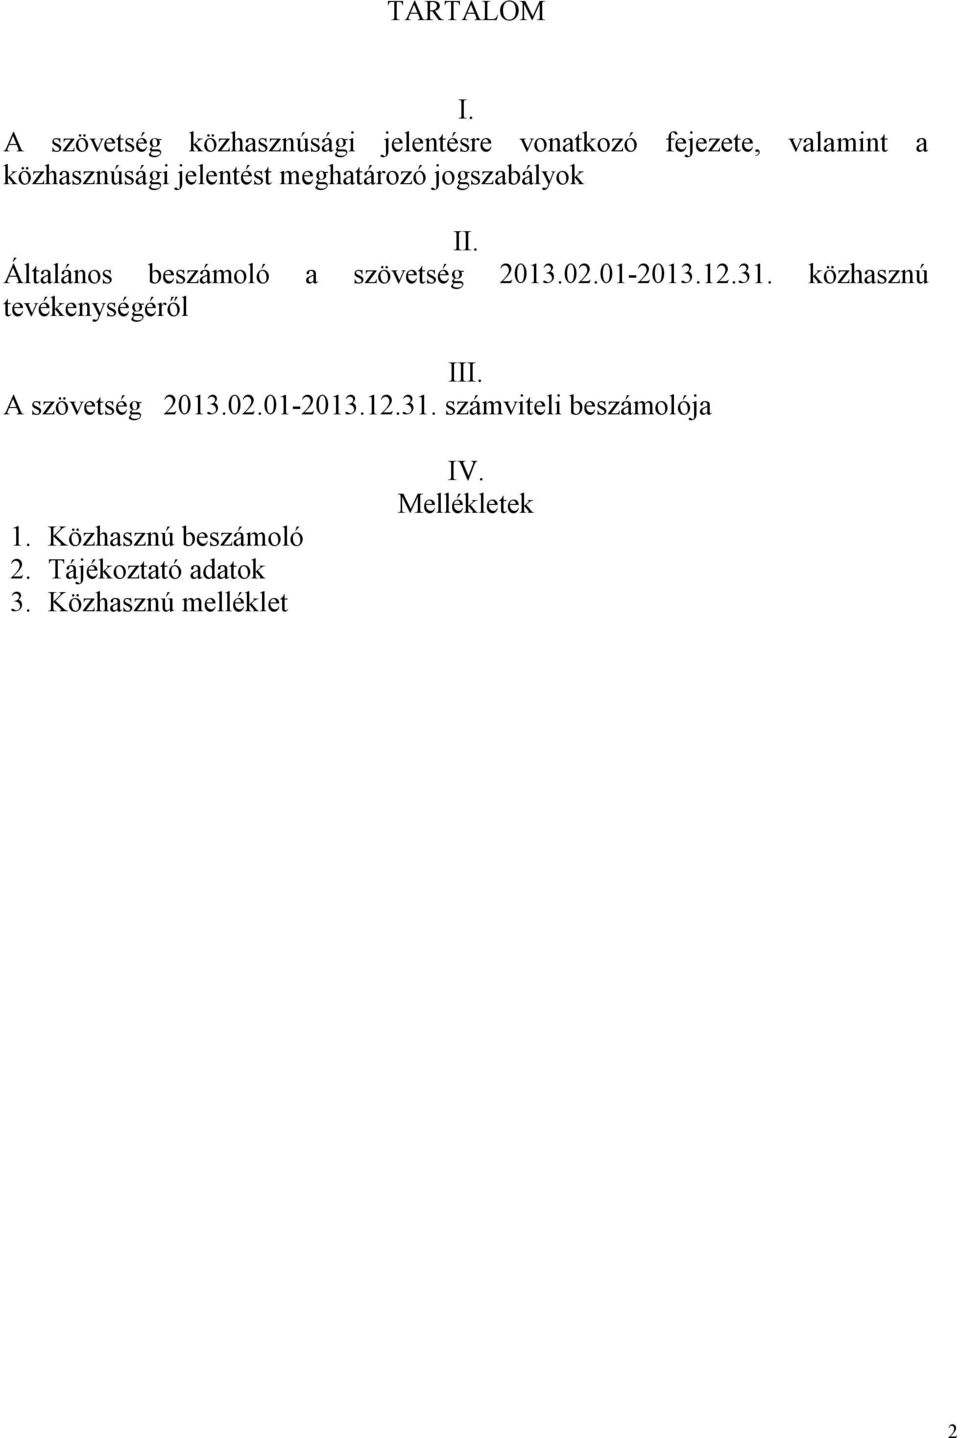 jelentést meghatározó jogszabályok II. Általános beszámoló a szövetség 2013.02.01-2013.12.